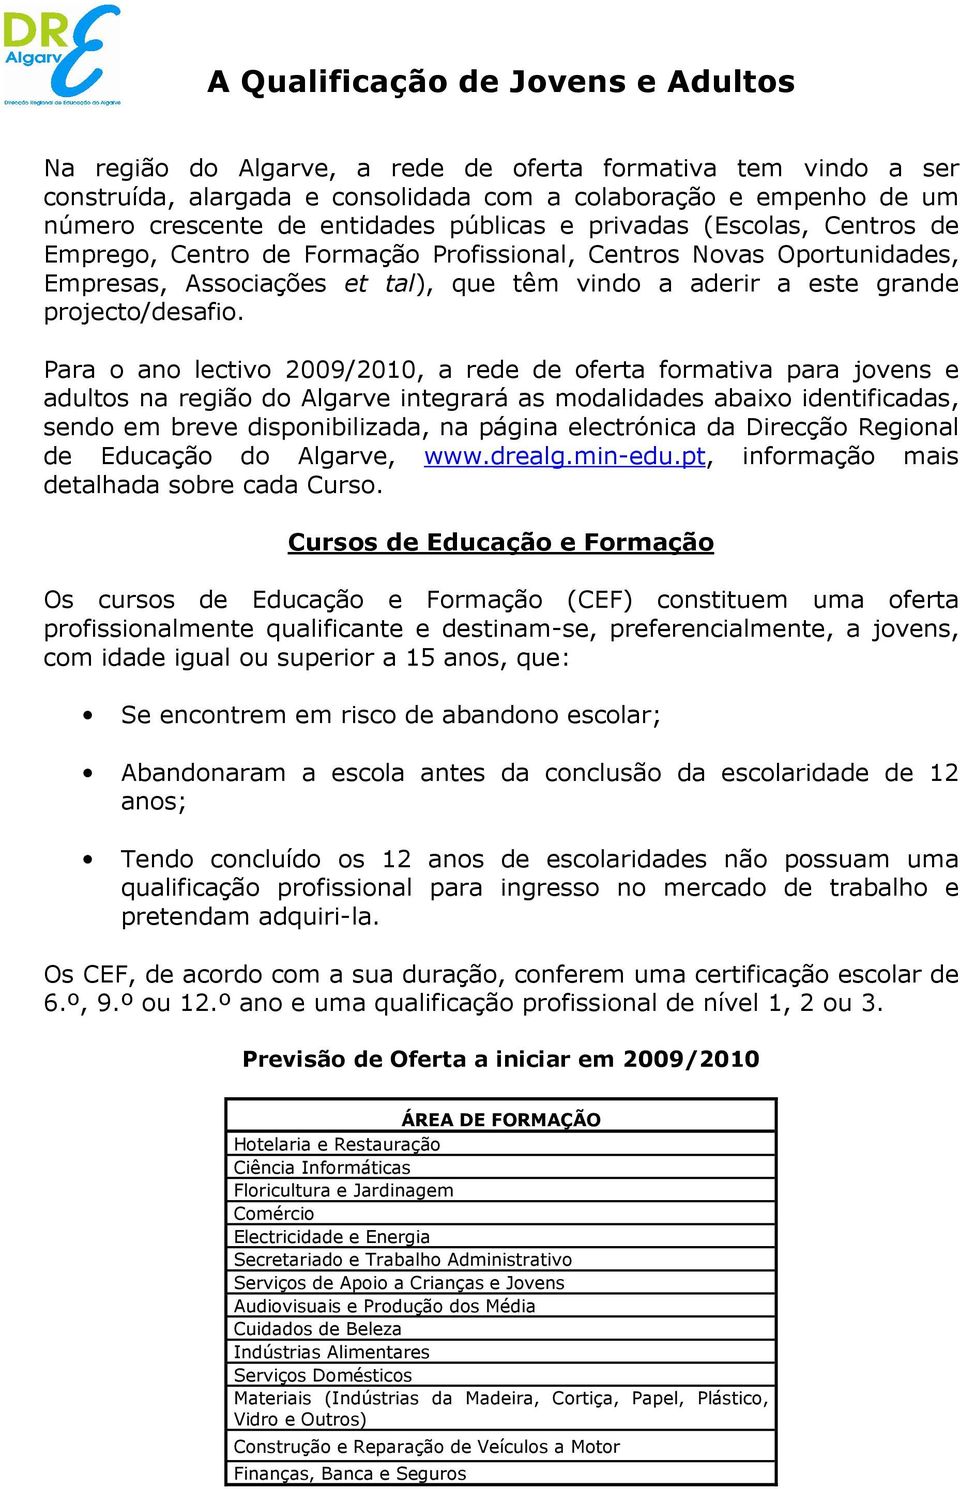 Para o ano lectivo 2009/2010, a rede de oferta formativa para jovens e adultos na região do Algarve integrará as modalidades abaixo identificadas, sendo em breve disponibilizada, na página